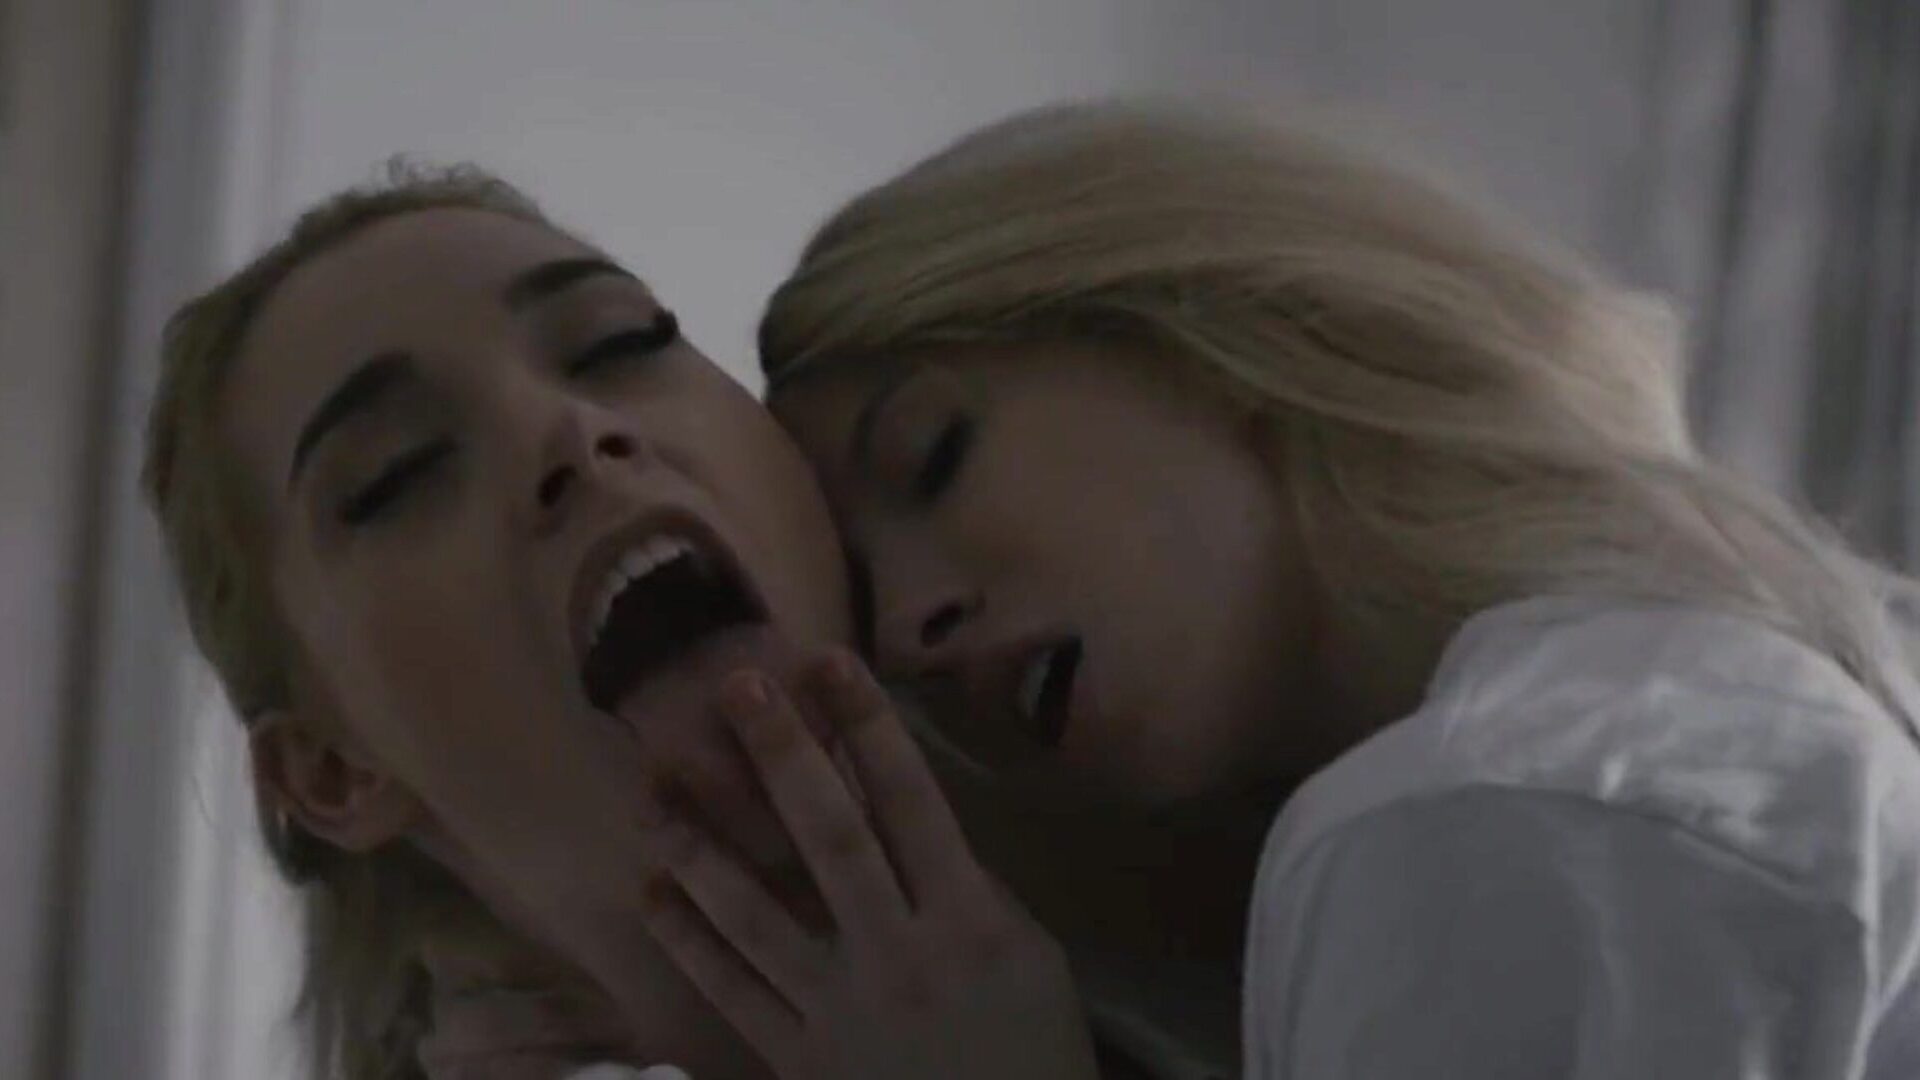 to veldig slutty blondiner liker å ta opp med tungen hverandres snatch og saks